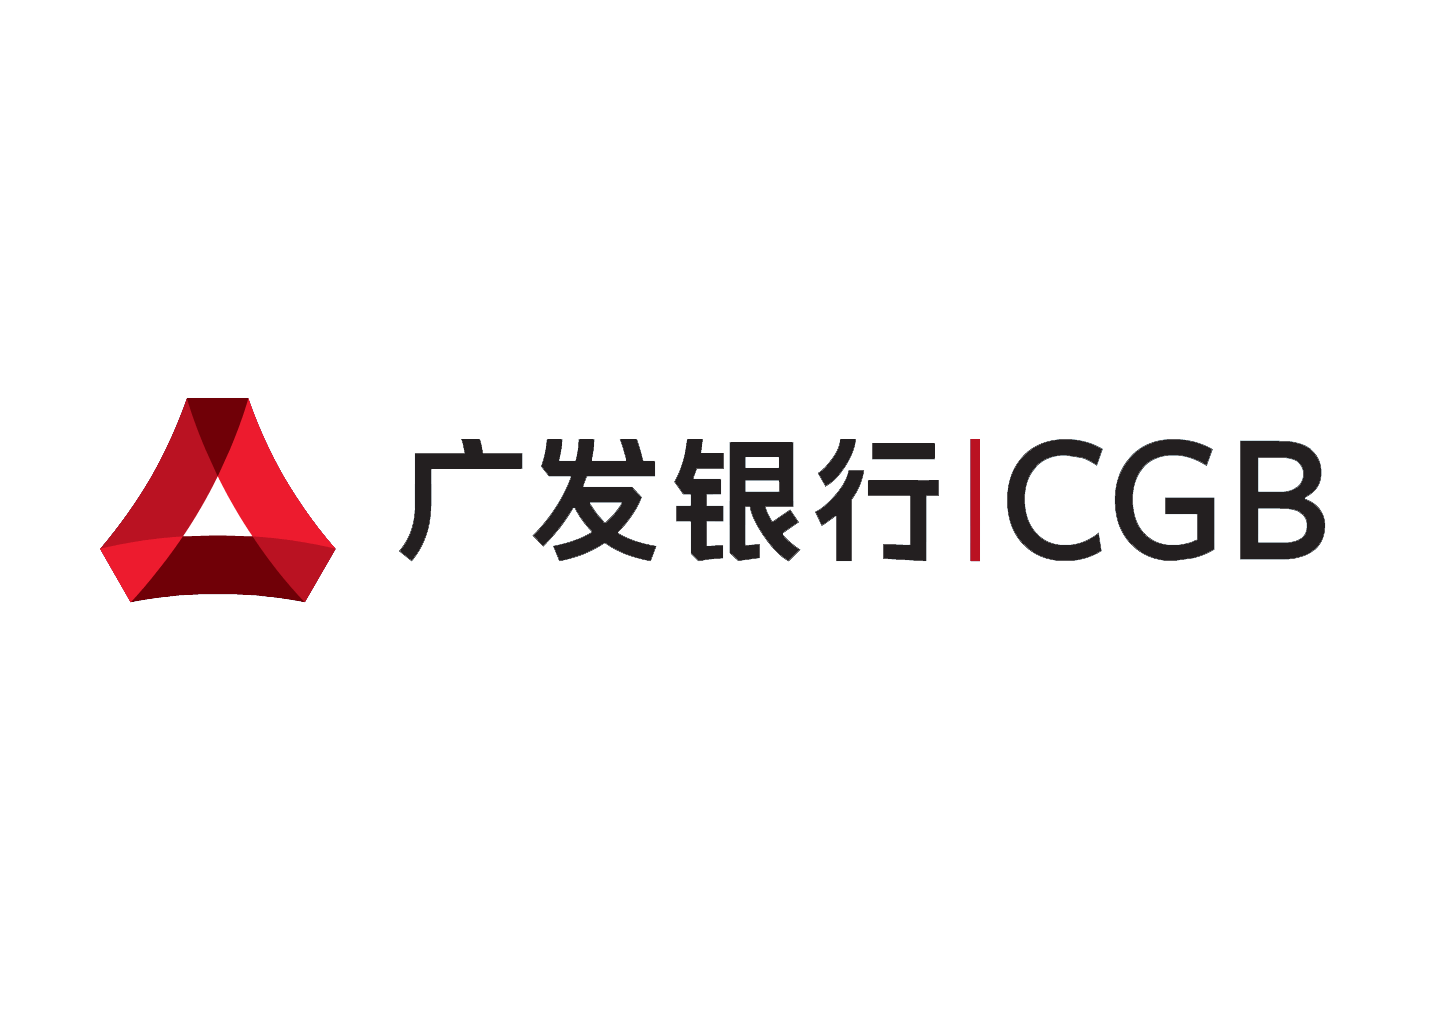 Chinese Bank Logo - Guangfa Bank logo